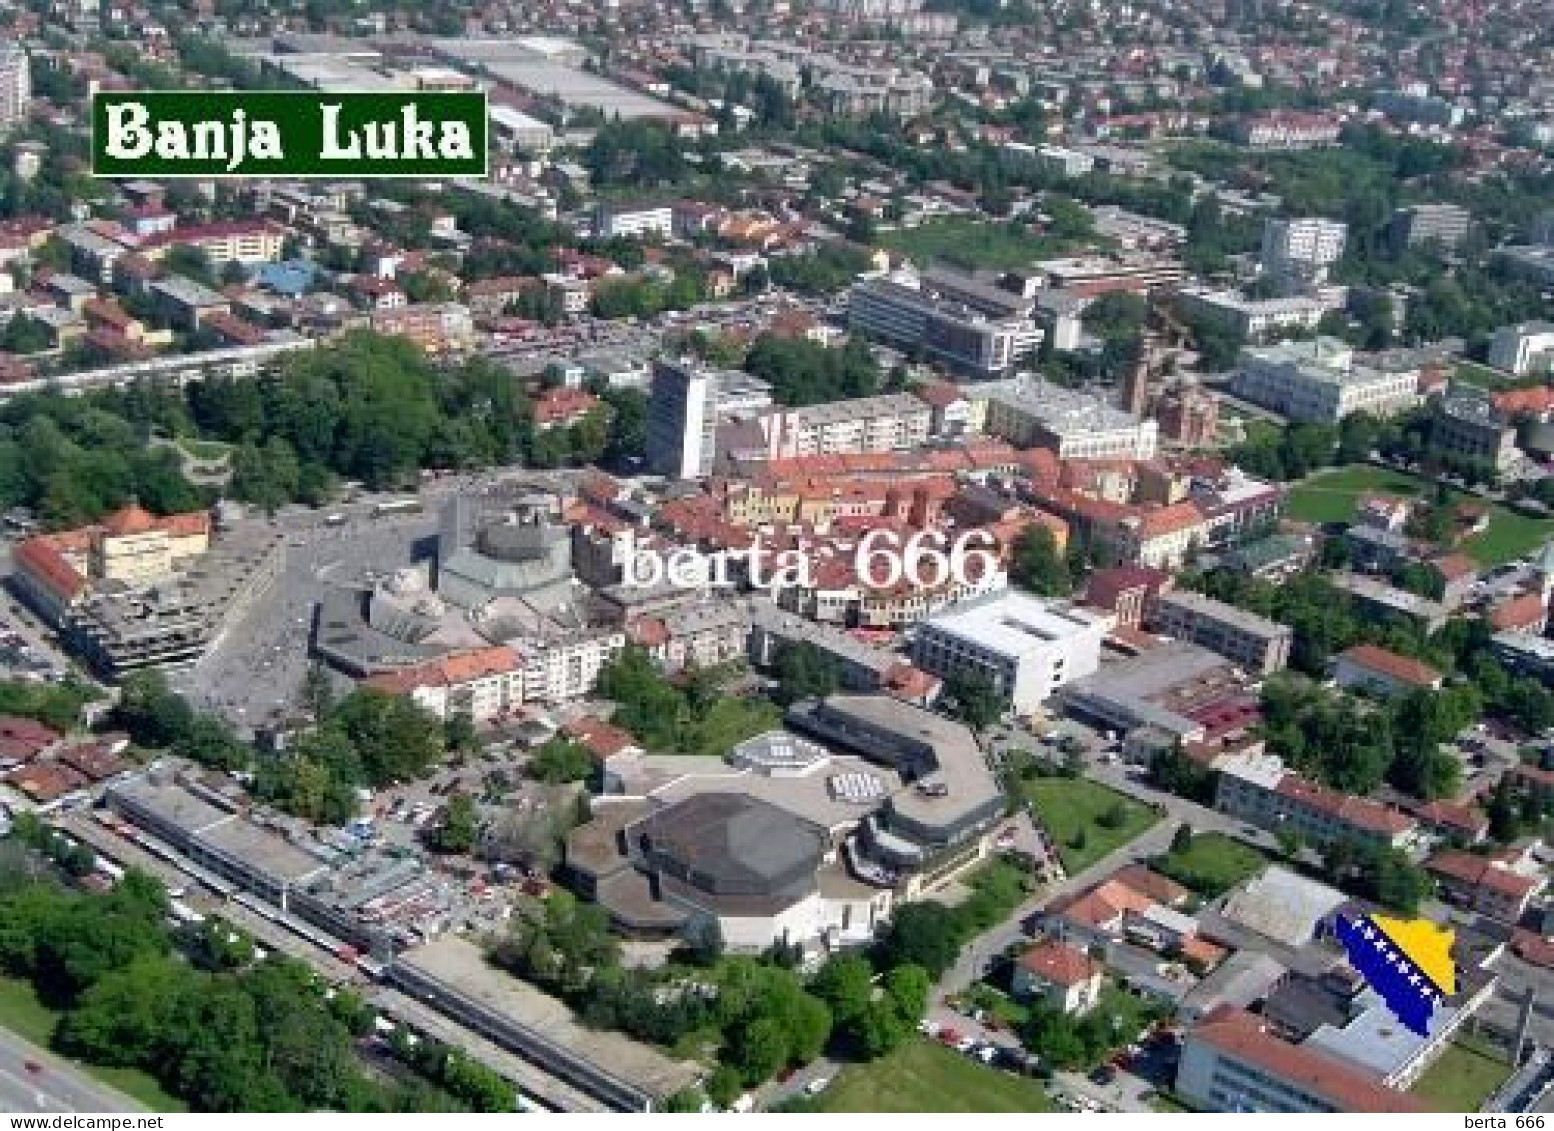 Bosnia And Herzegovina Banja Luka Aerial View New Postcard - Bosnie-Herzegovine